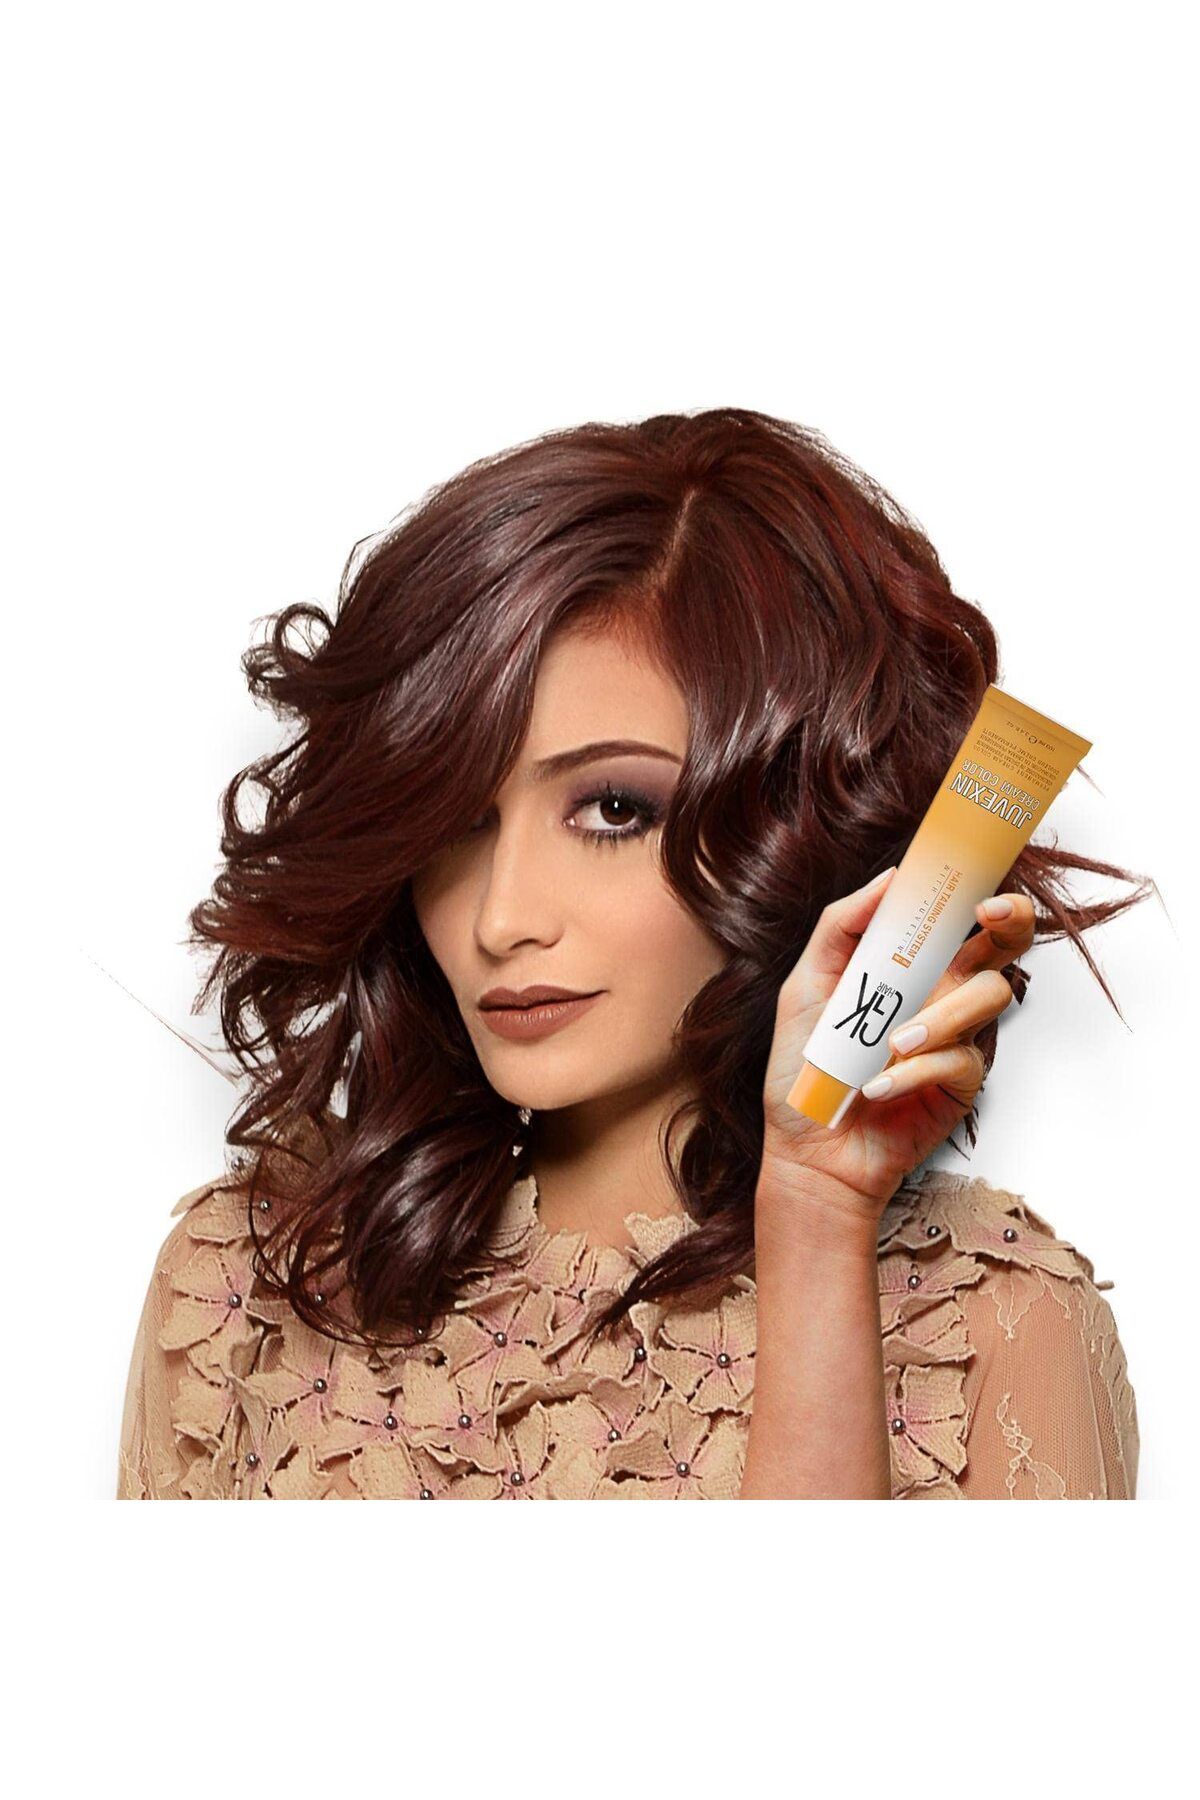 GK HAIR Juvexin Cream Color Saç Boyası 100 ml 5.0 Yoğun Açık Kahve